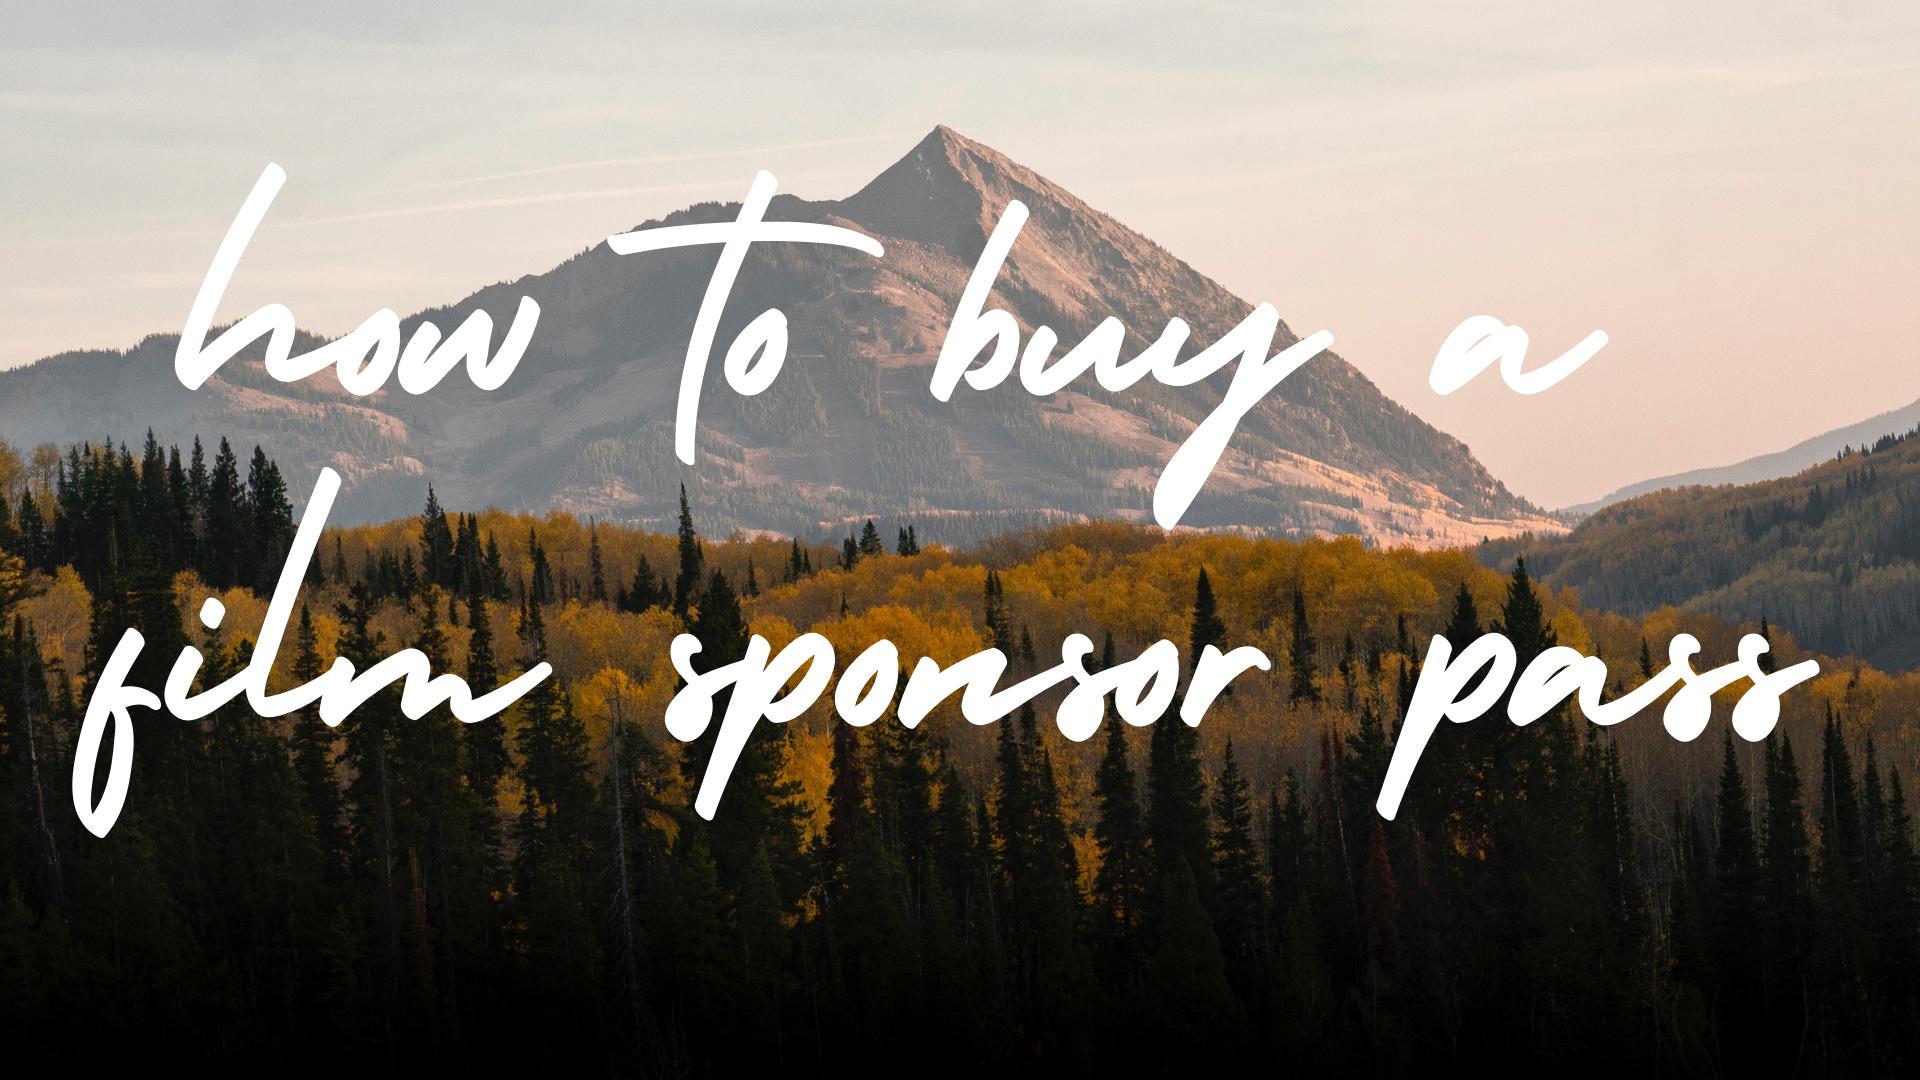 TUTORIAL: How to Buy a Film Sponsor Pass